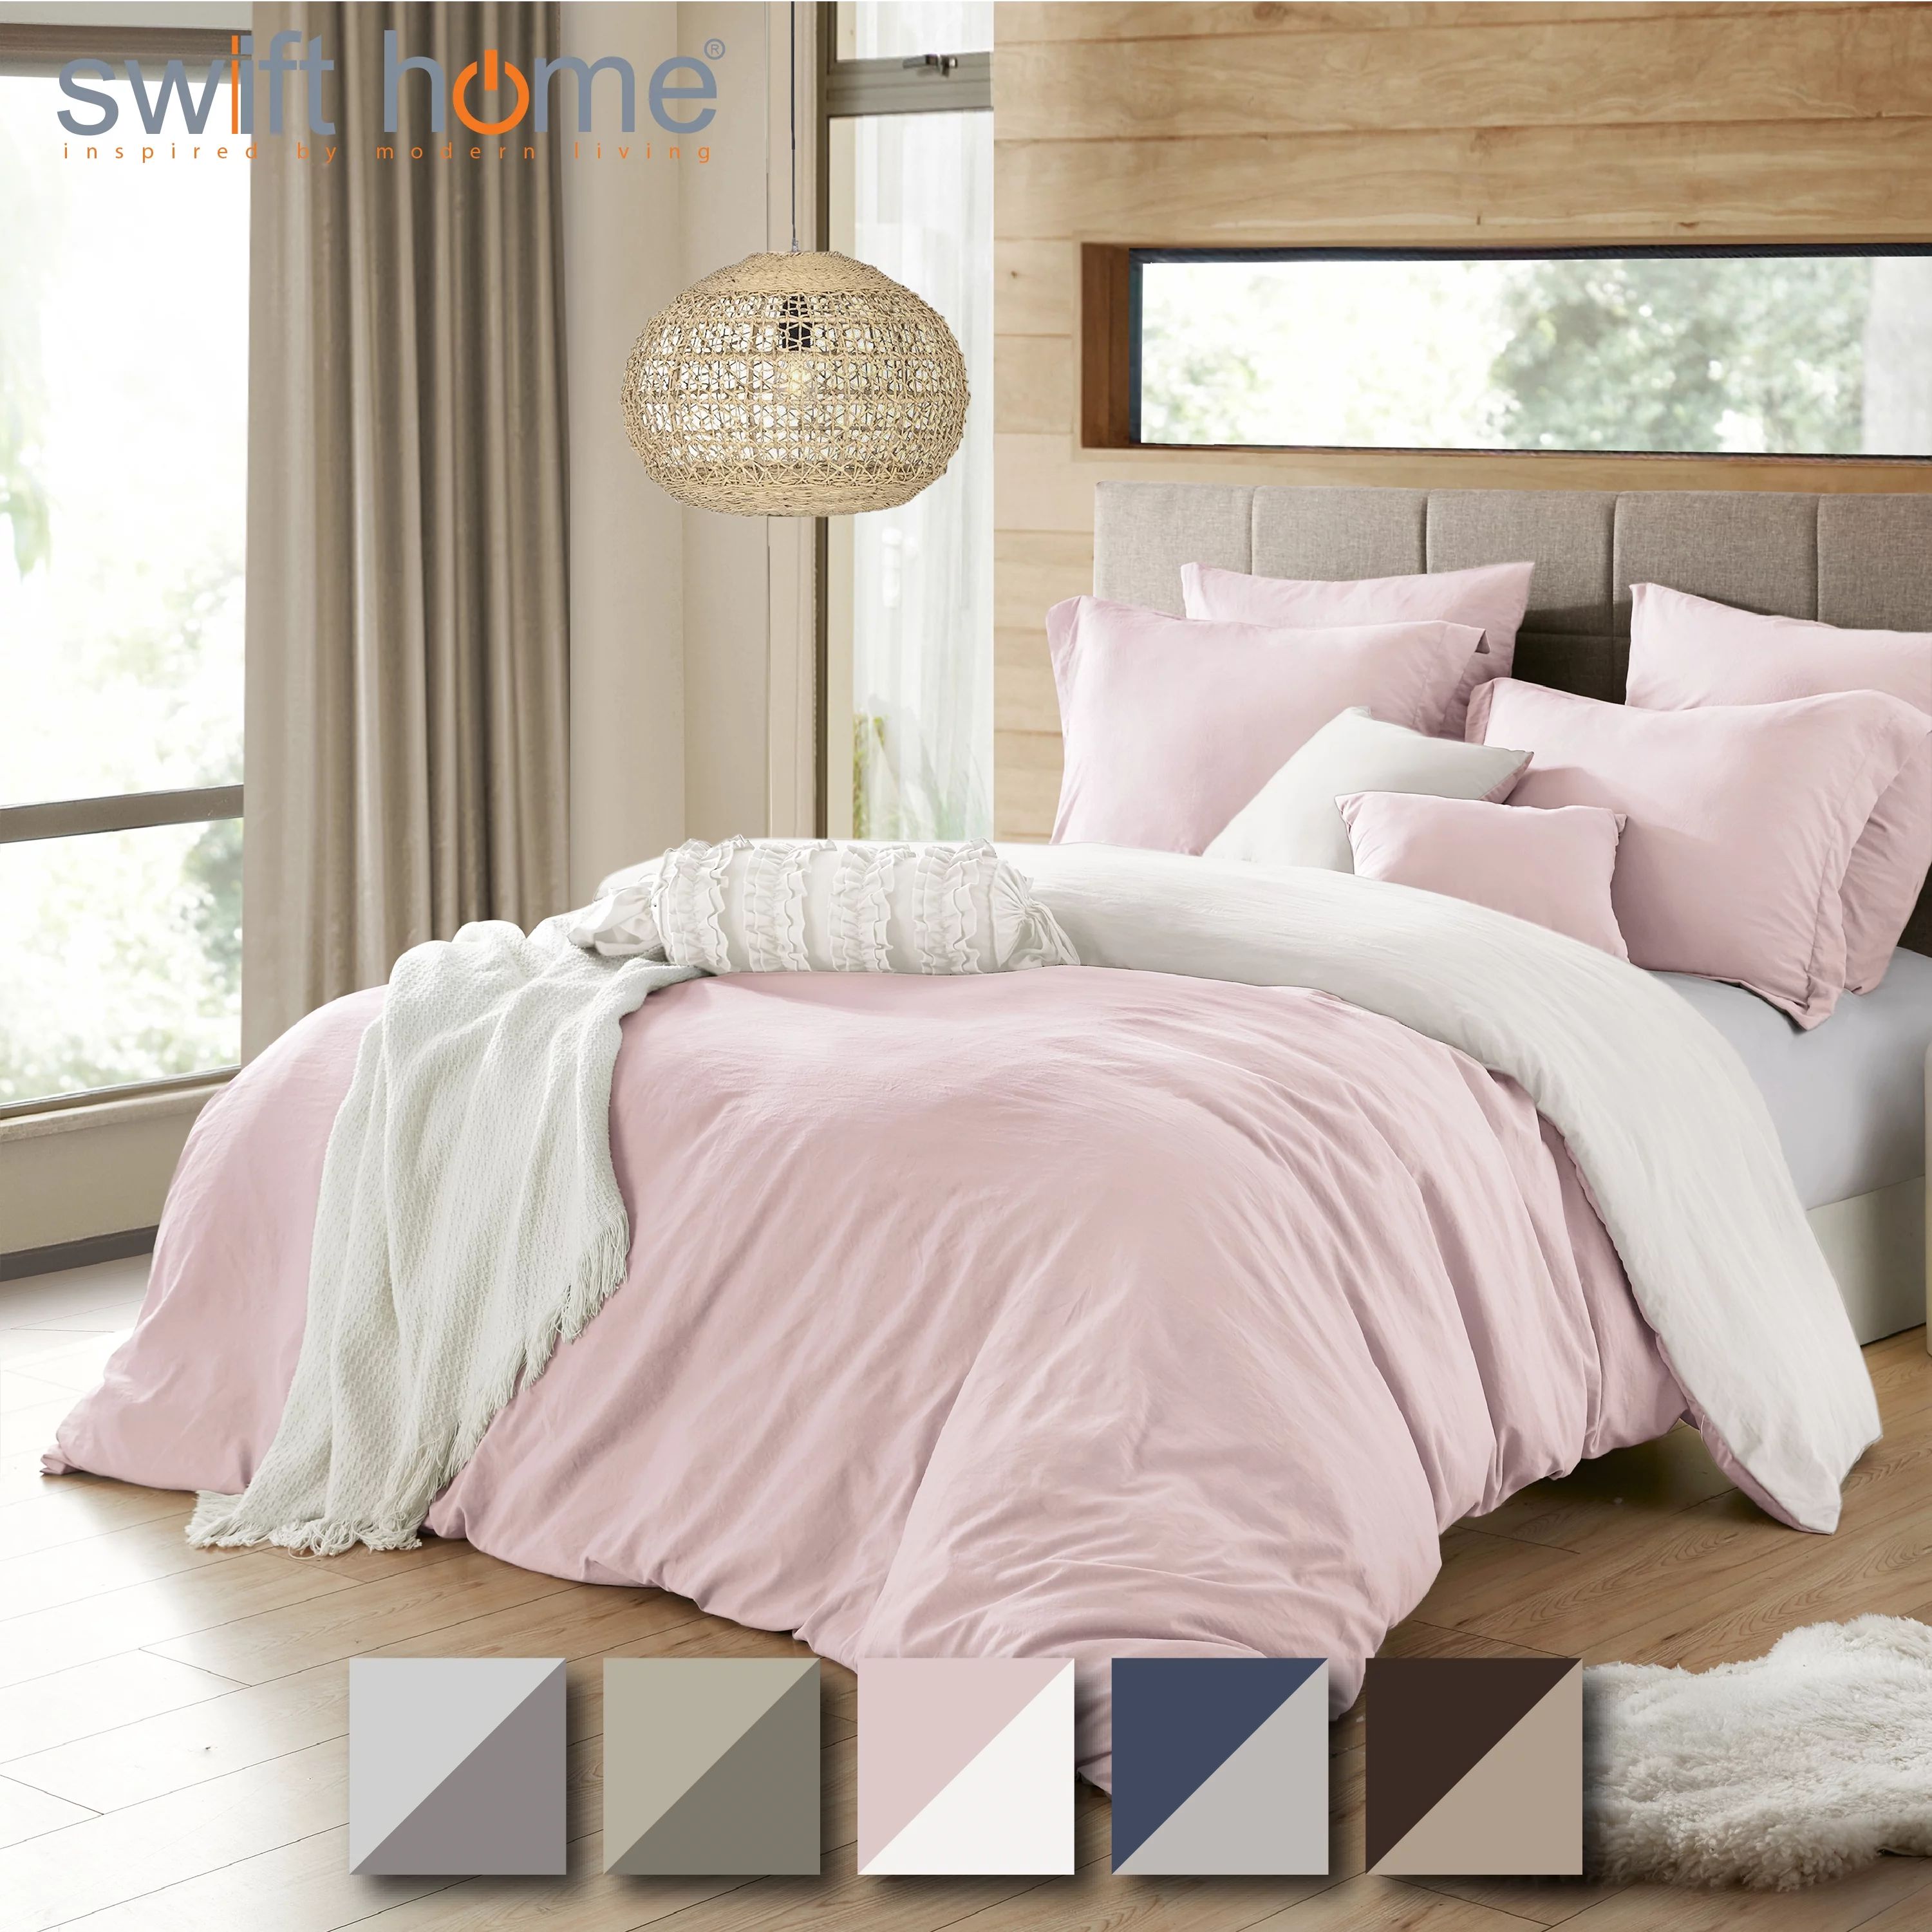 Swift Home 2 in 1 Reversible Duvet Cover & Sham Set (Comforter not Included), Pink/White, Full/Qu... | Walmart (US)